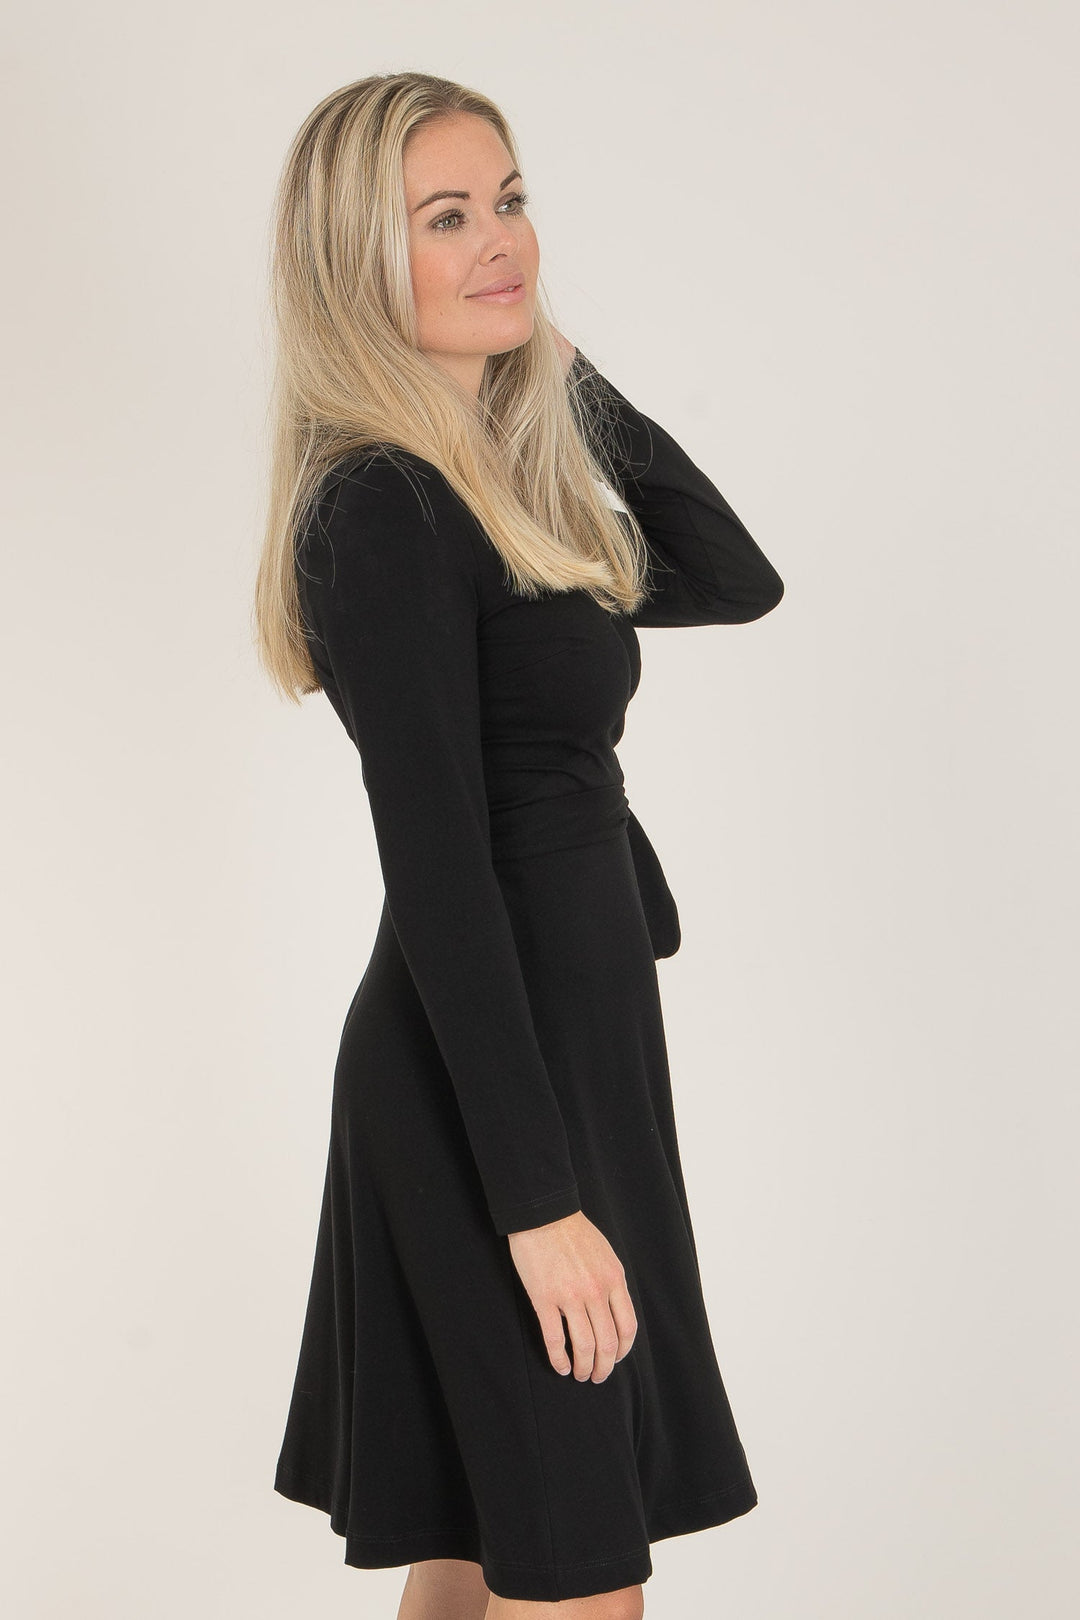 Bestie short wrap jersey dress - Black - Knälång, svart omlottklänning i trikå